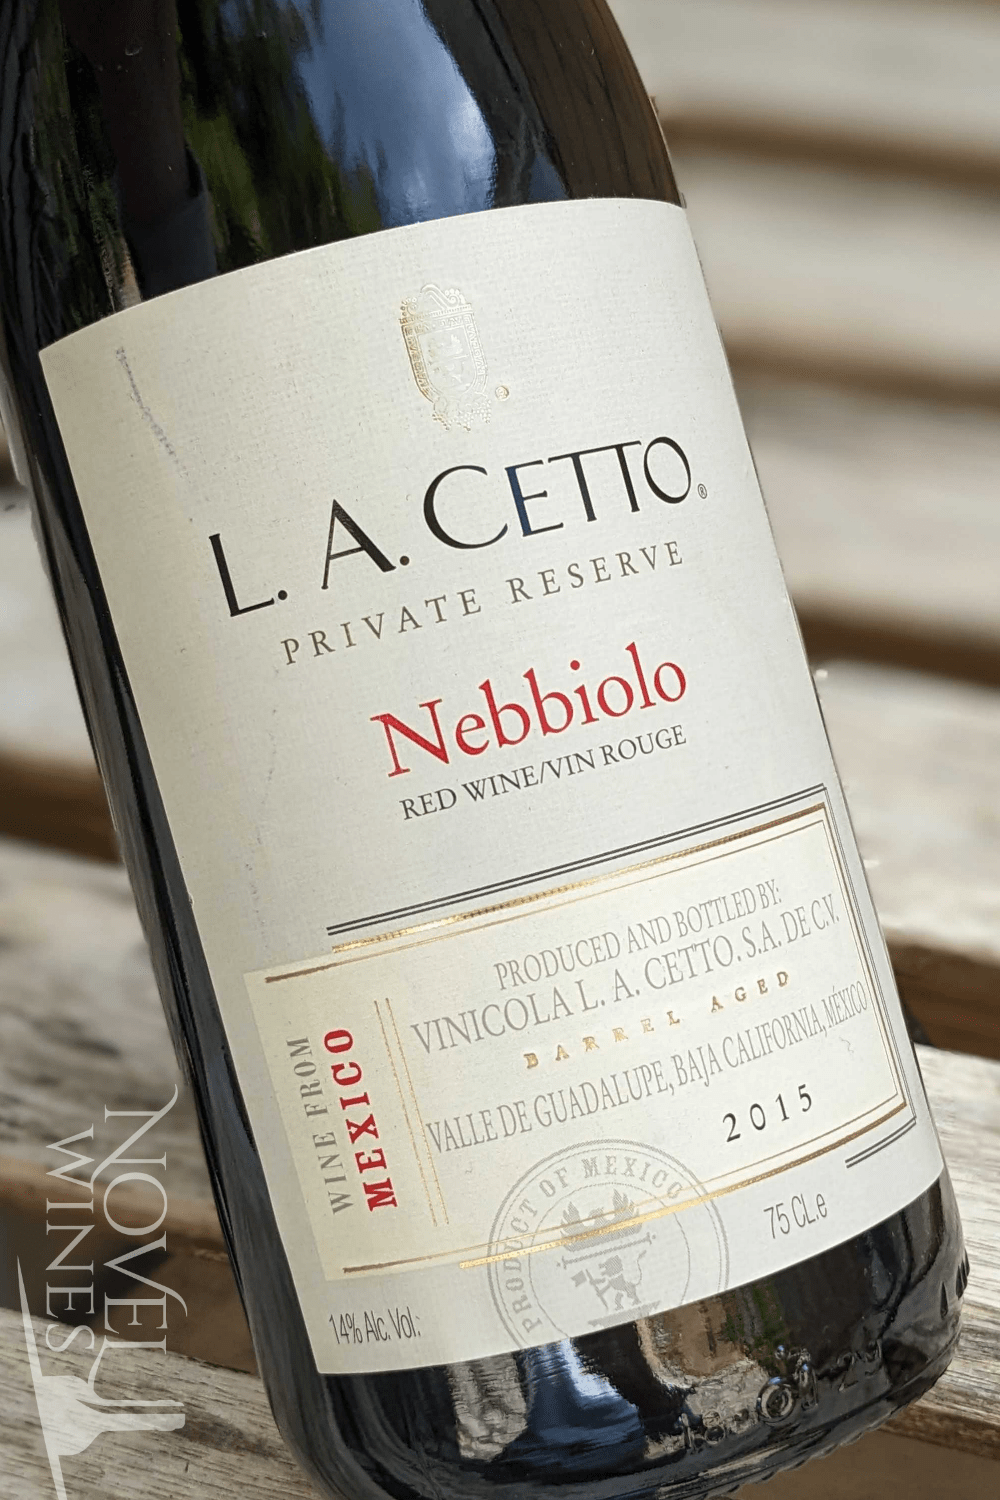 L. A. Cetto Red Wine L. A. Cetto Private Reserve Nebbiolo 2015, Mexico